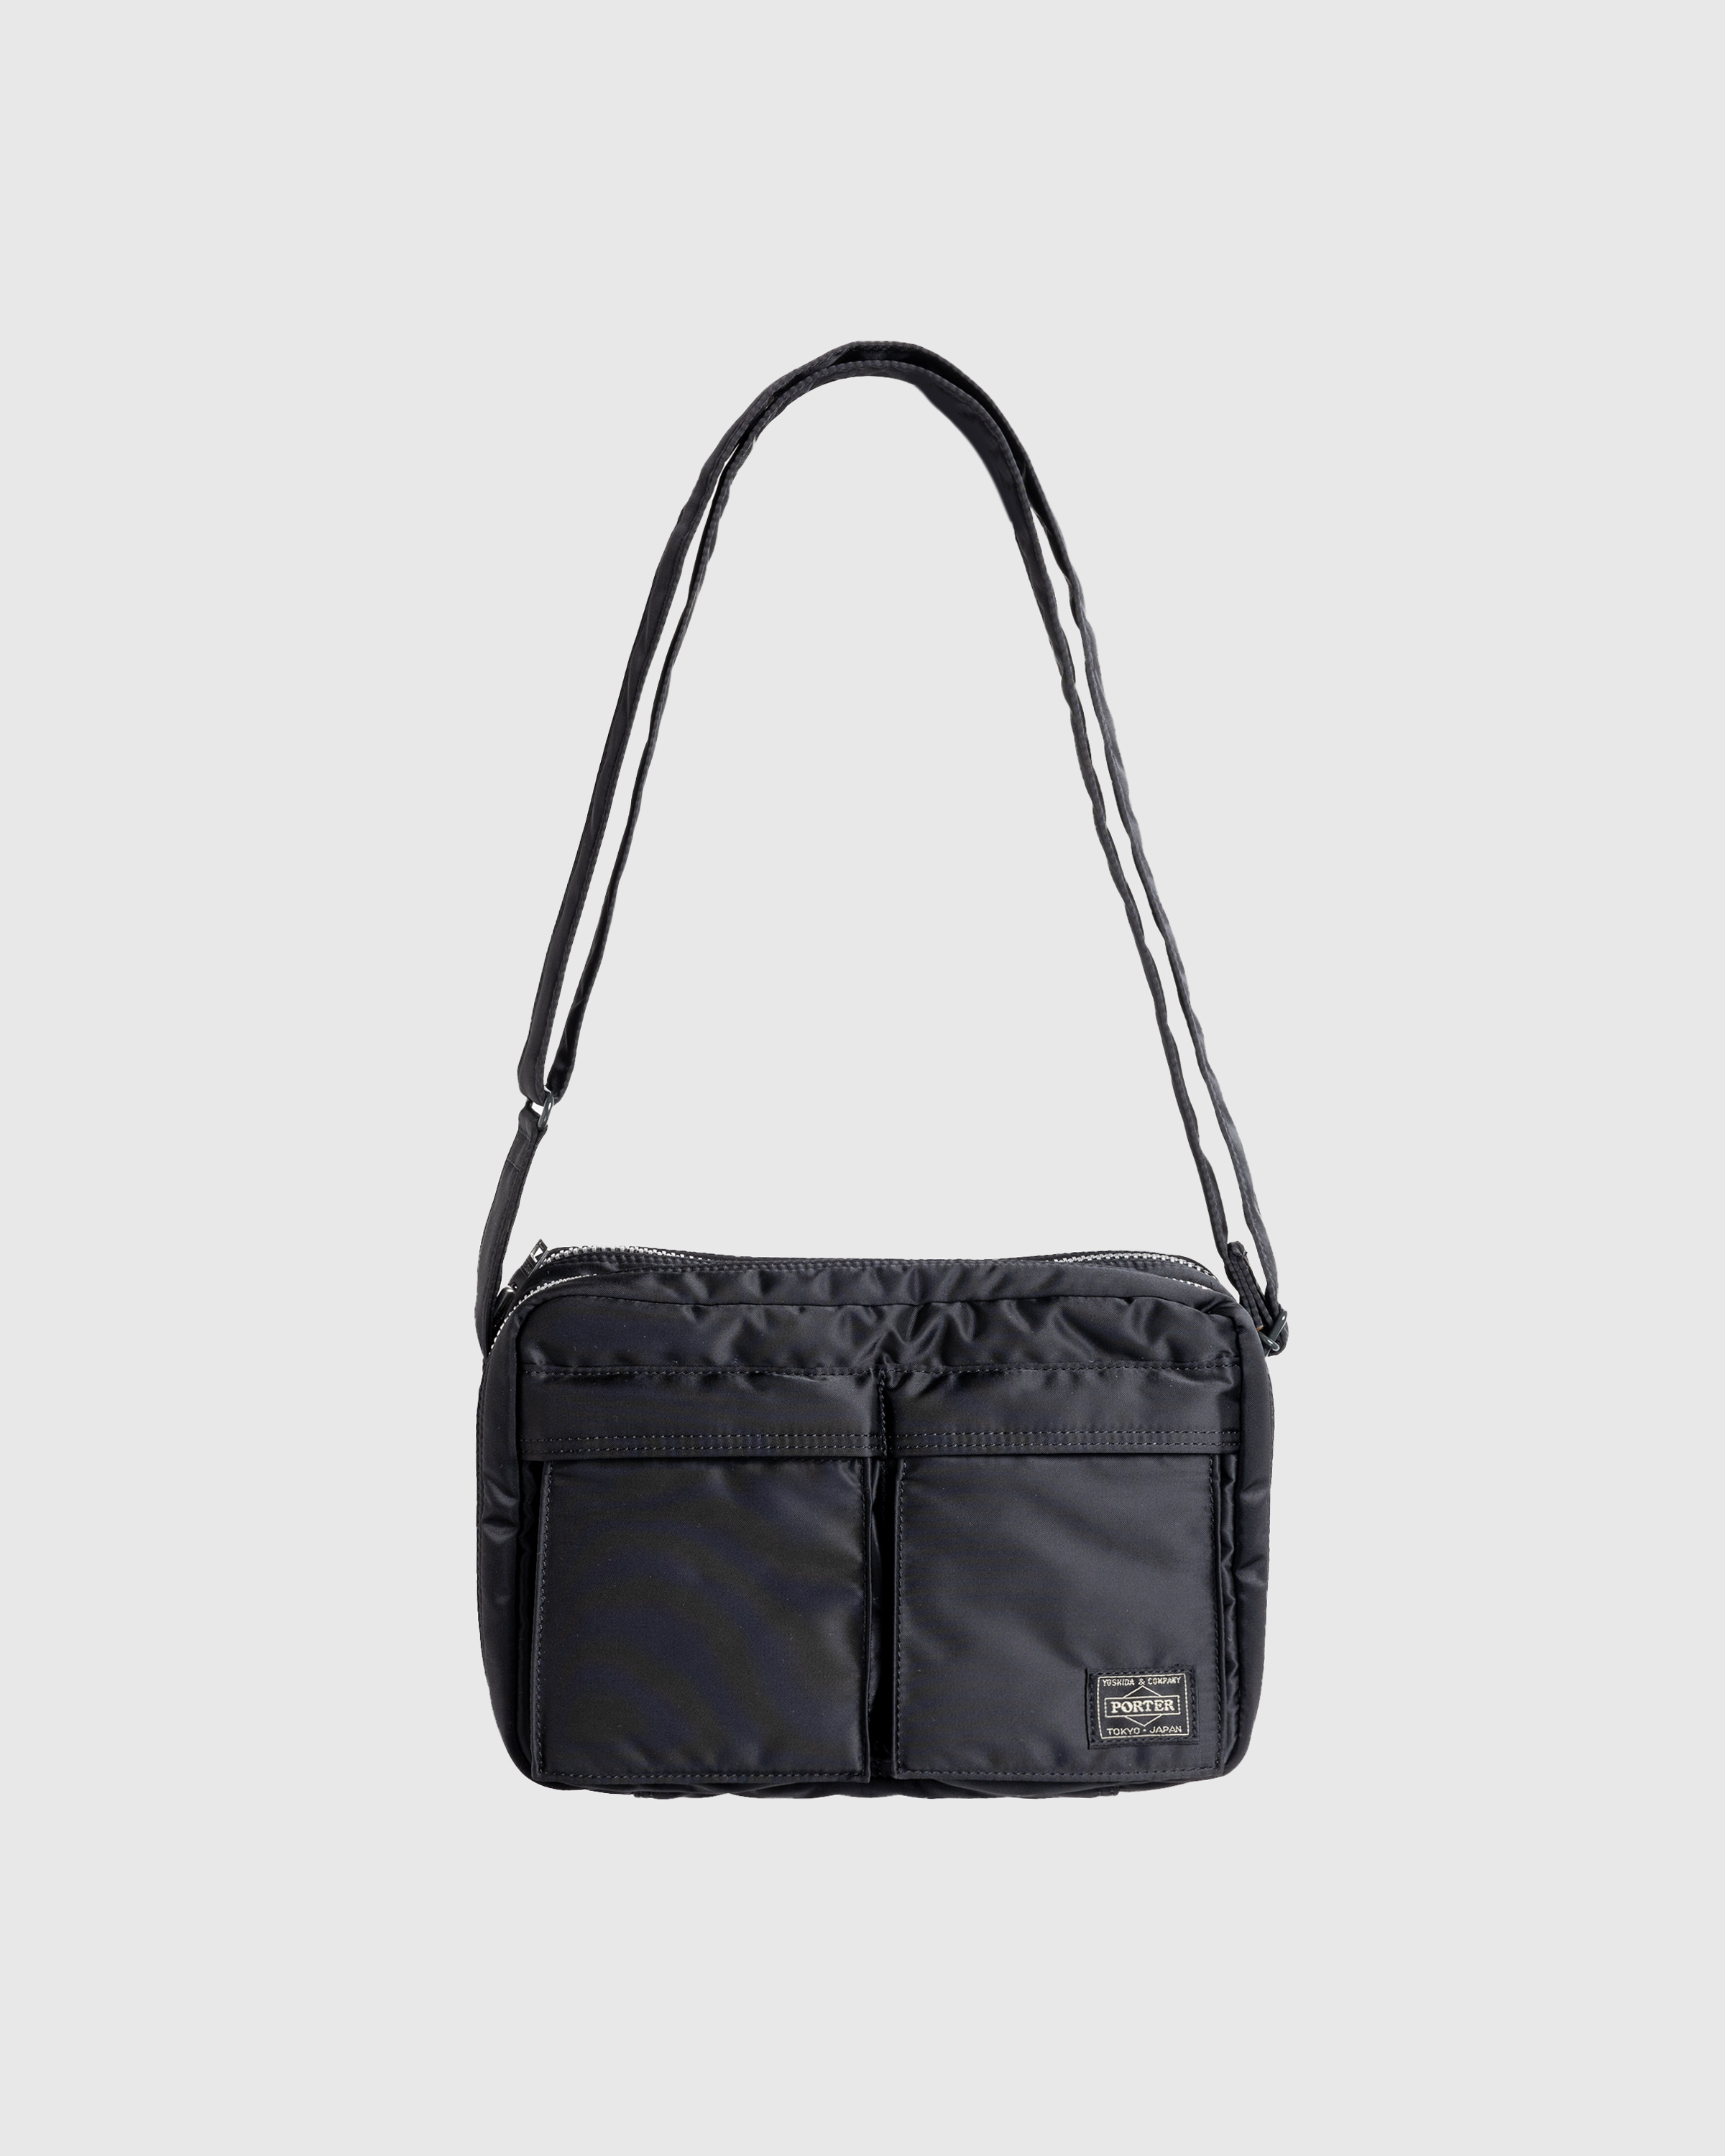 Porter-Yoshida & Co. – Tanker Shoulder Bag Black - Shoulder Bags - Black - Image 1